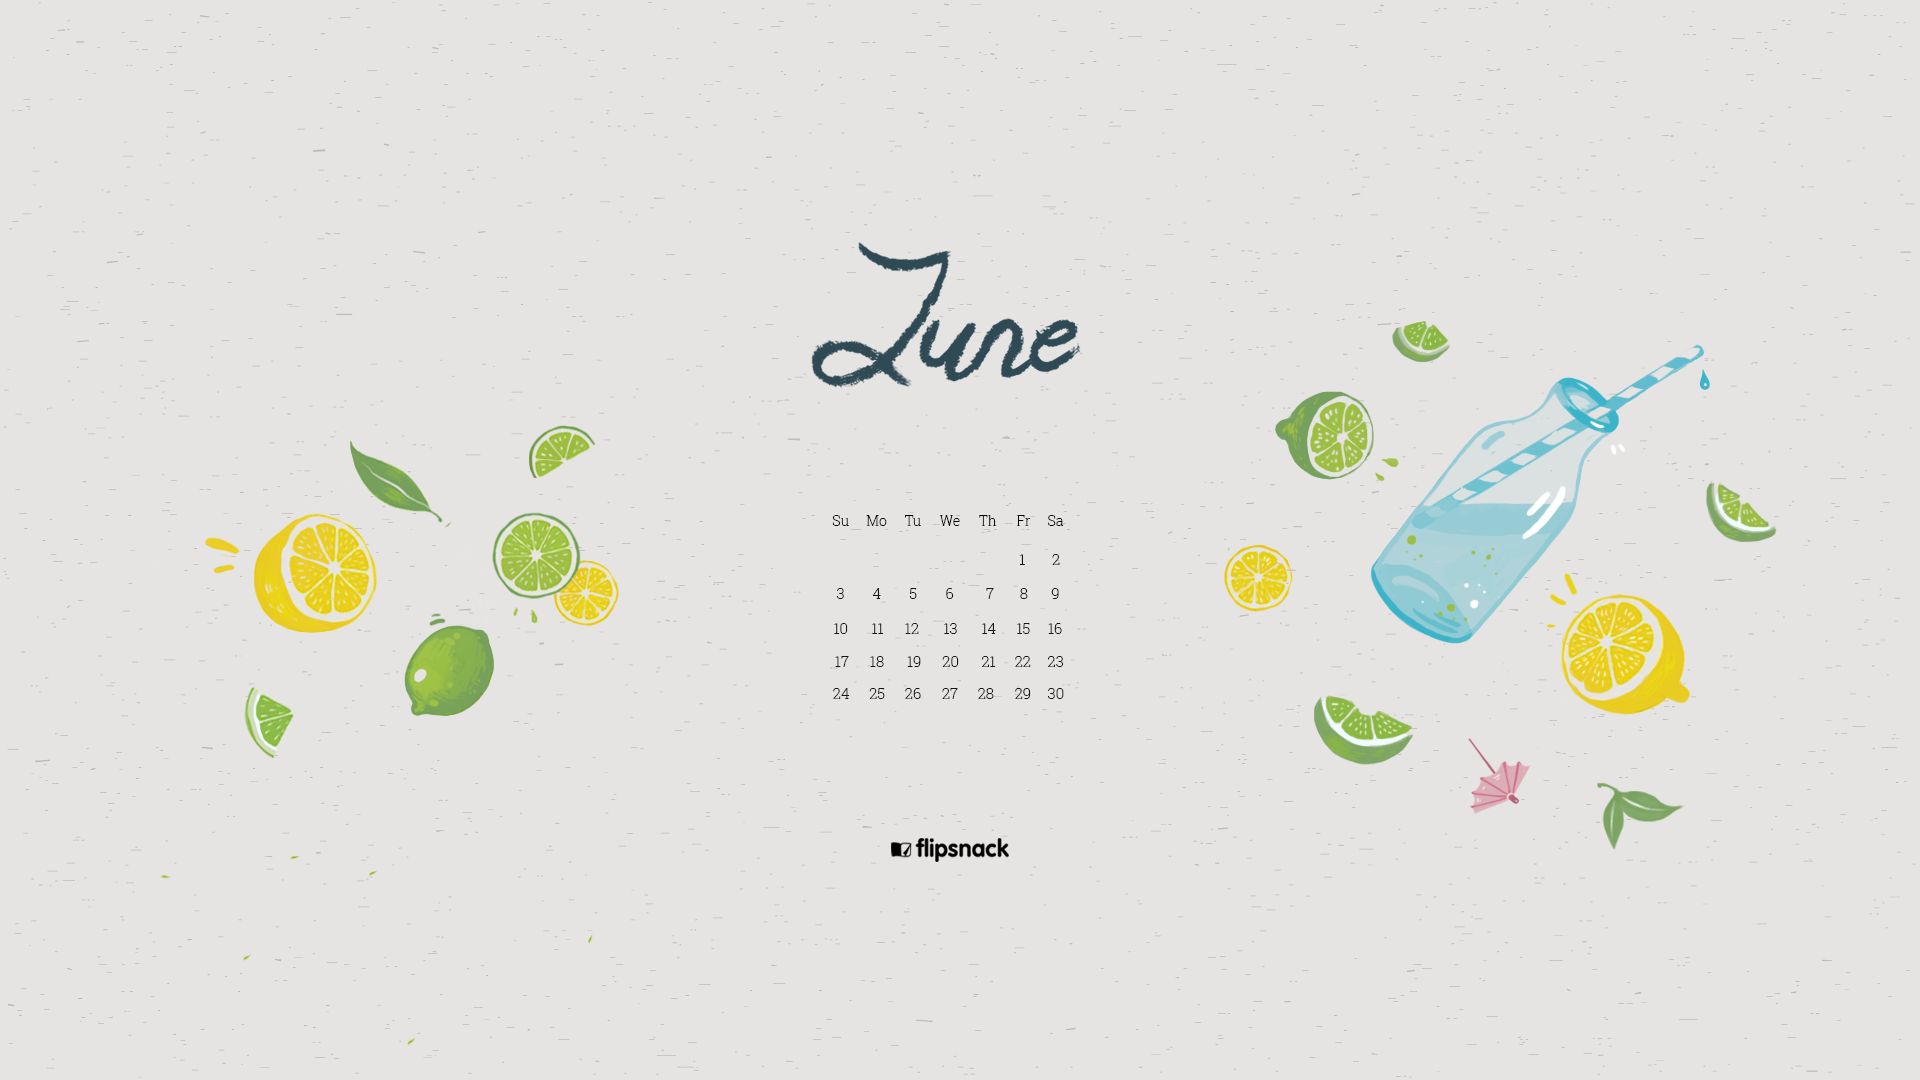 June 2018 Desktop Wallpapers